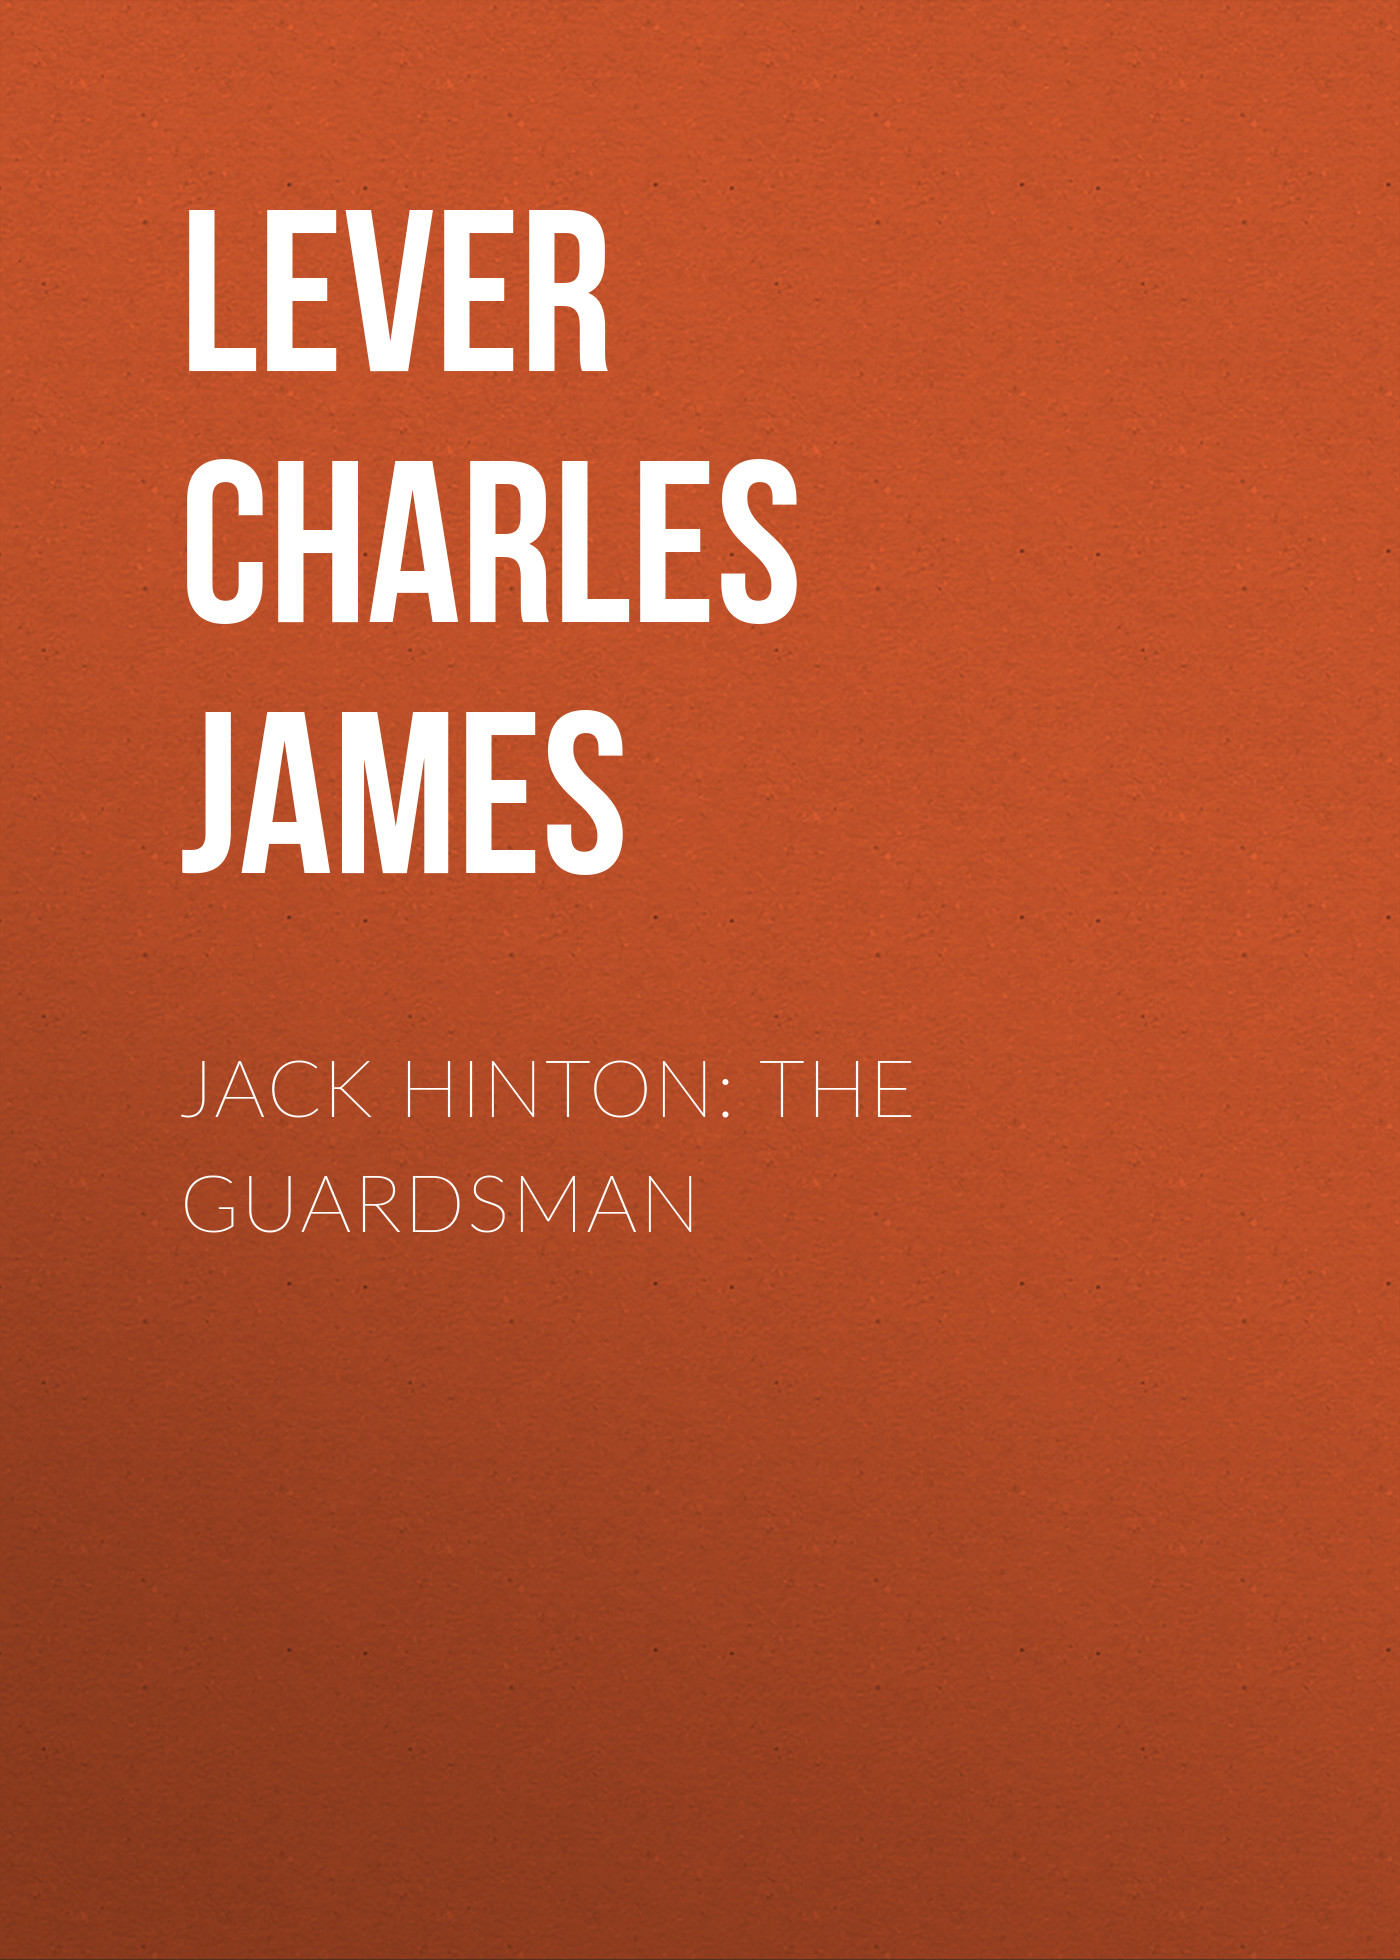 Книга Jack Hinton: The Guardsman из серии , созданная Charles Lever, может относится к жанру Литература 19 века, Зарубежная старинная литература, Зарубежная классика. Стоимость электронной книги Jack Hinton: The Guardsman с идентификатором 25449300 составляет 0 руб.